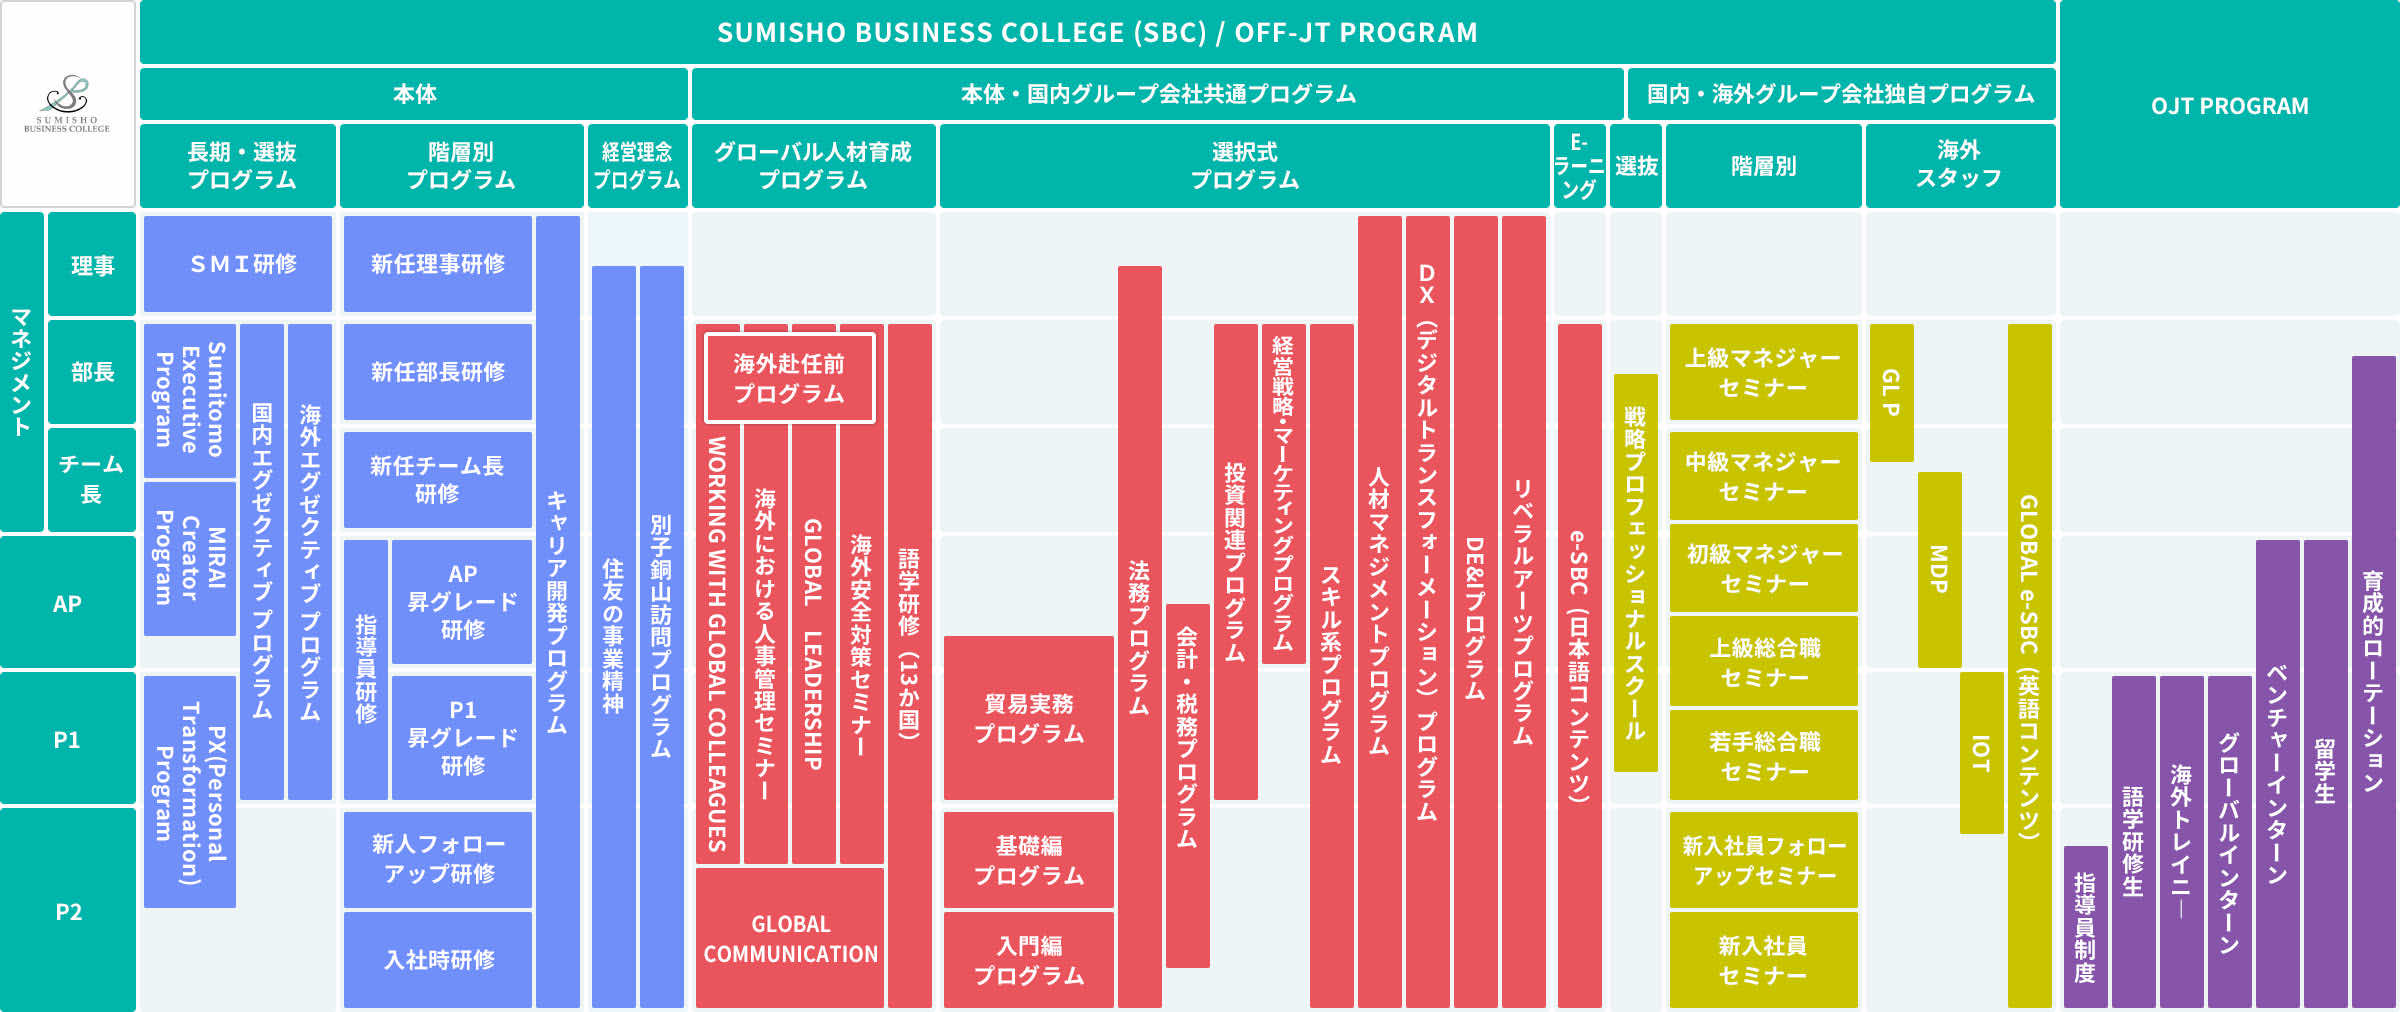 住商ビジネスカレッジ（SBC）研修プログラムとOJTプログラム研修体系図